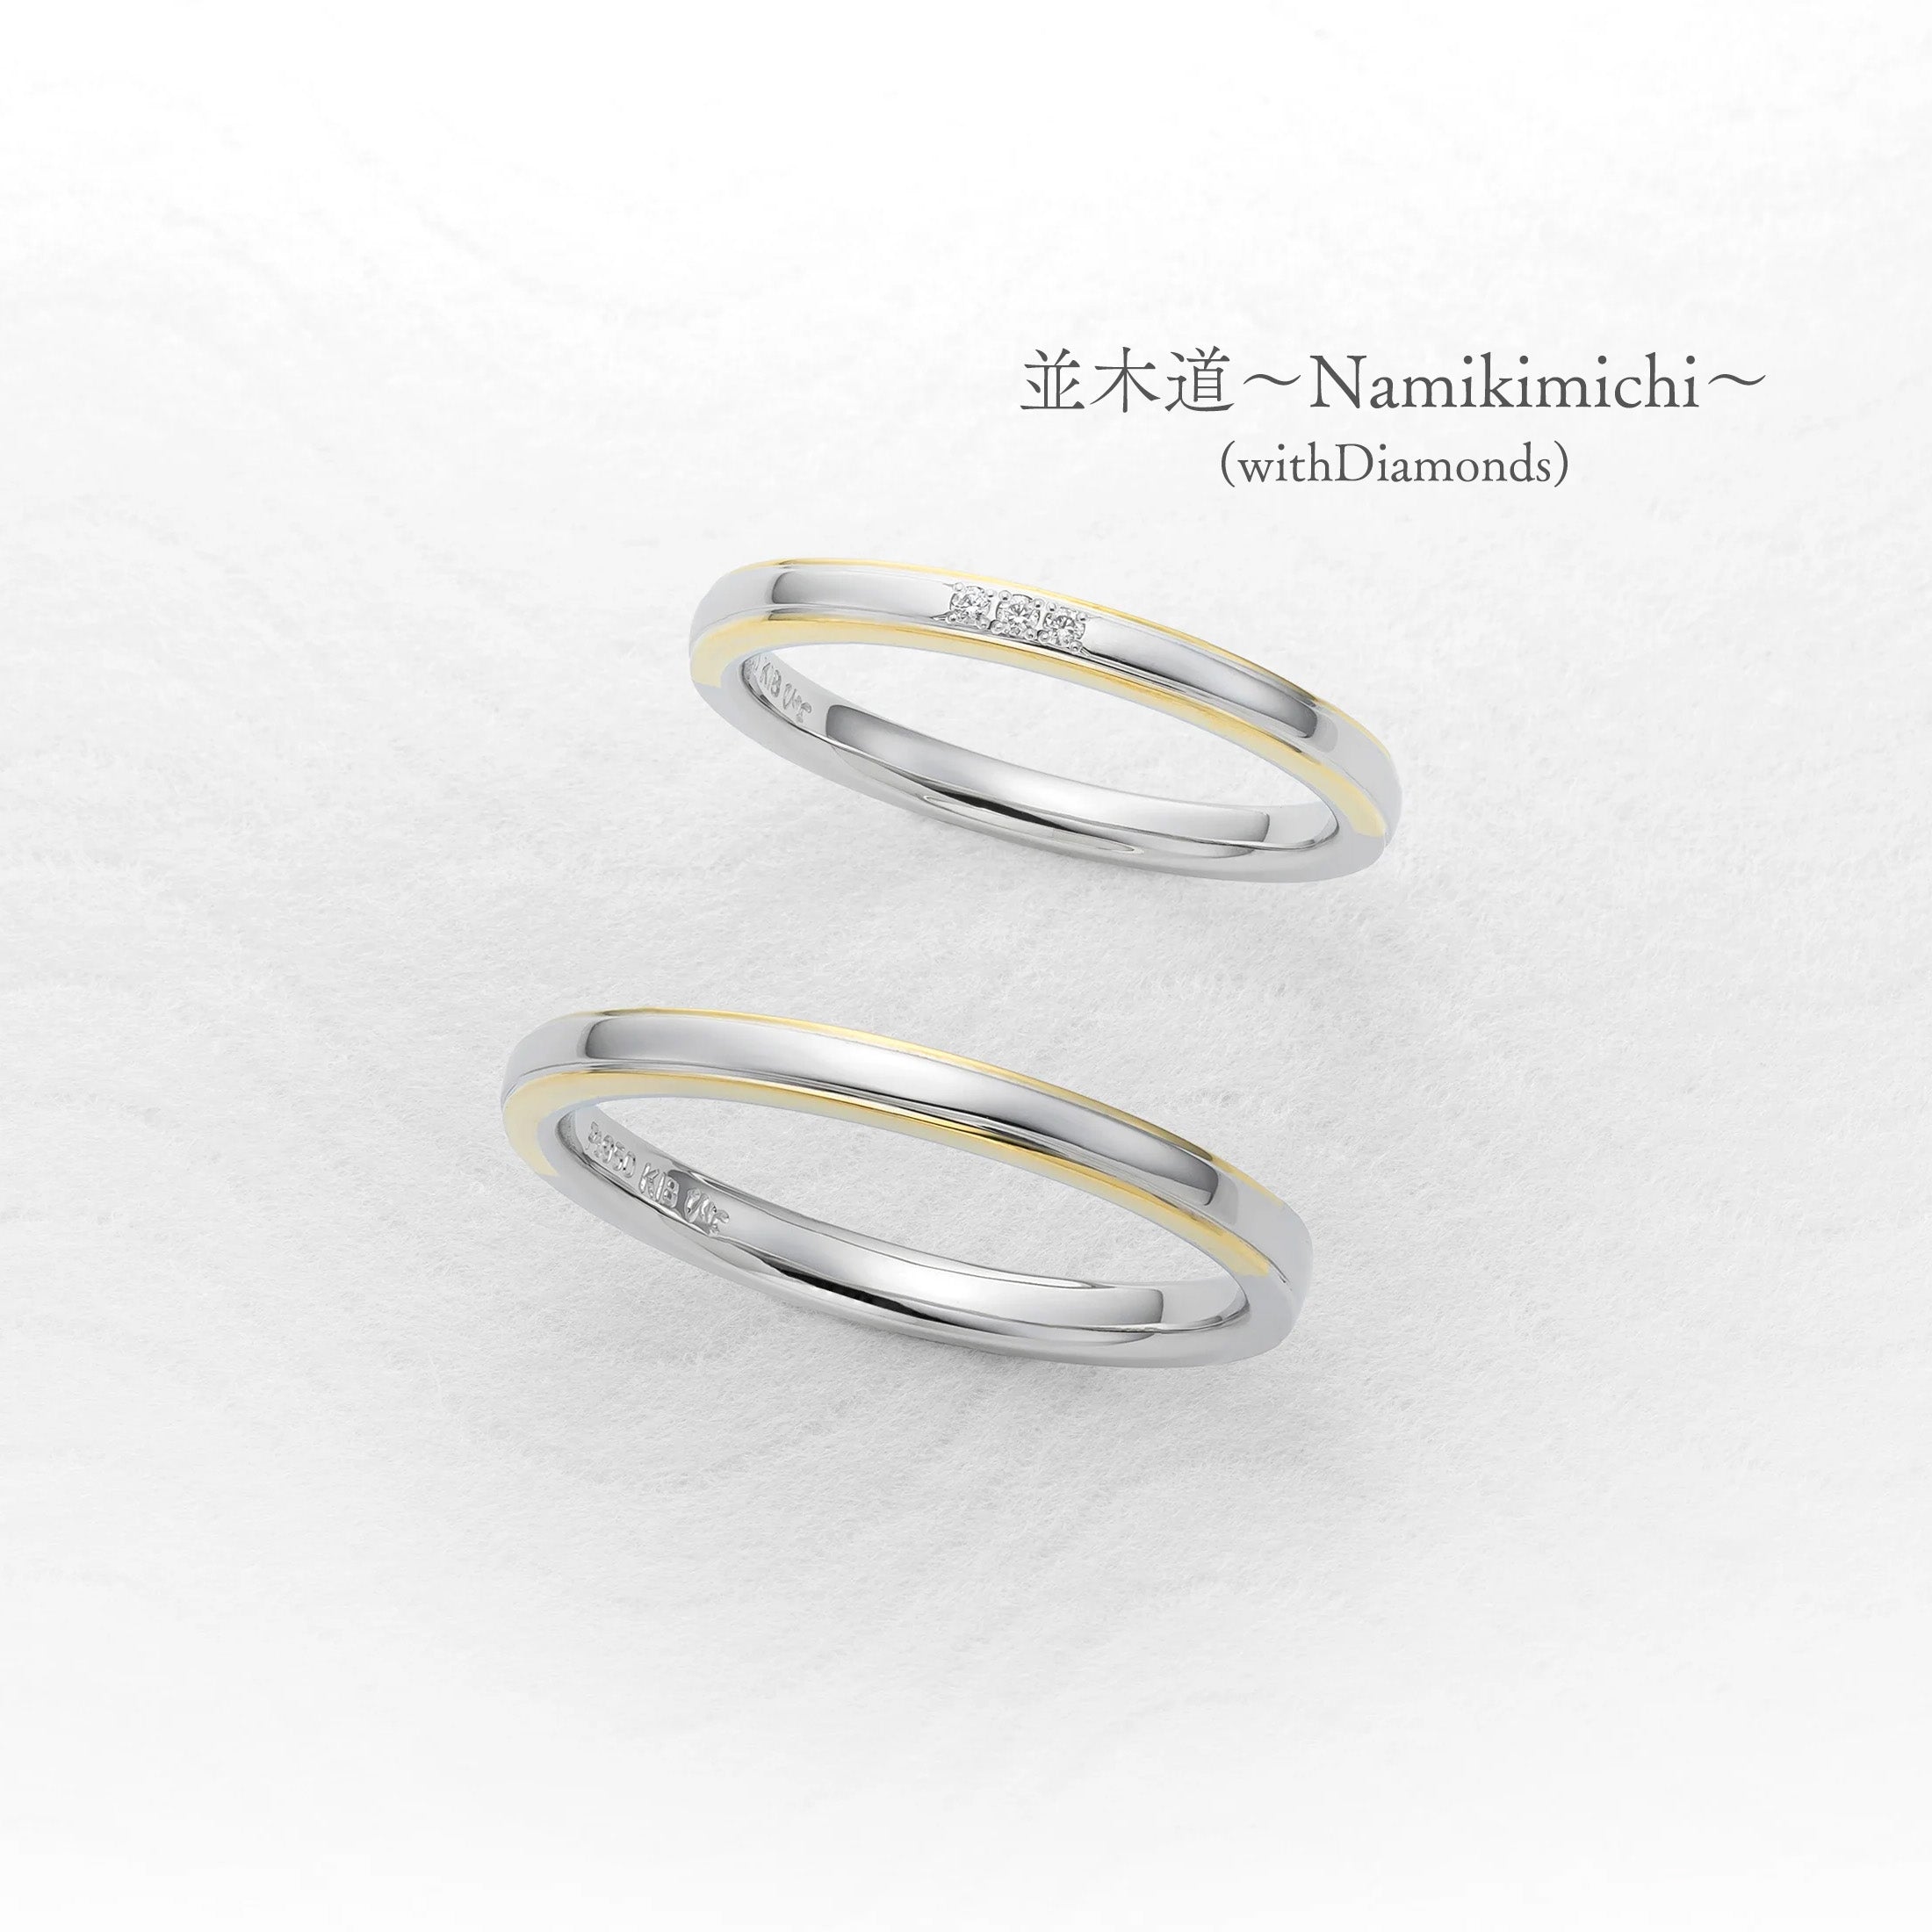 並木道〜Namikimichi〜 (with Diamonds)